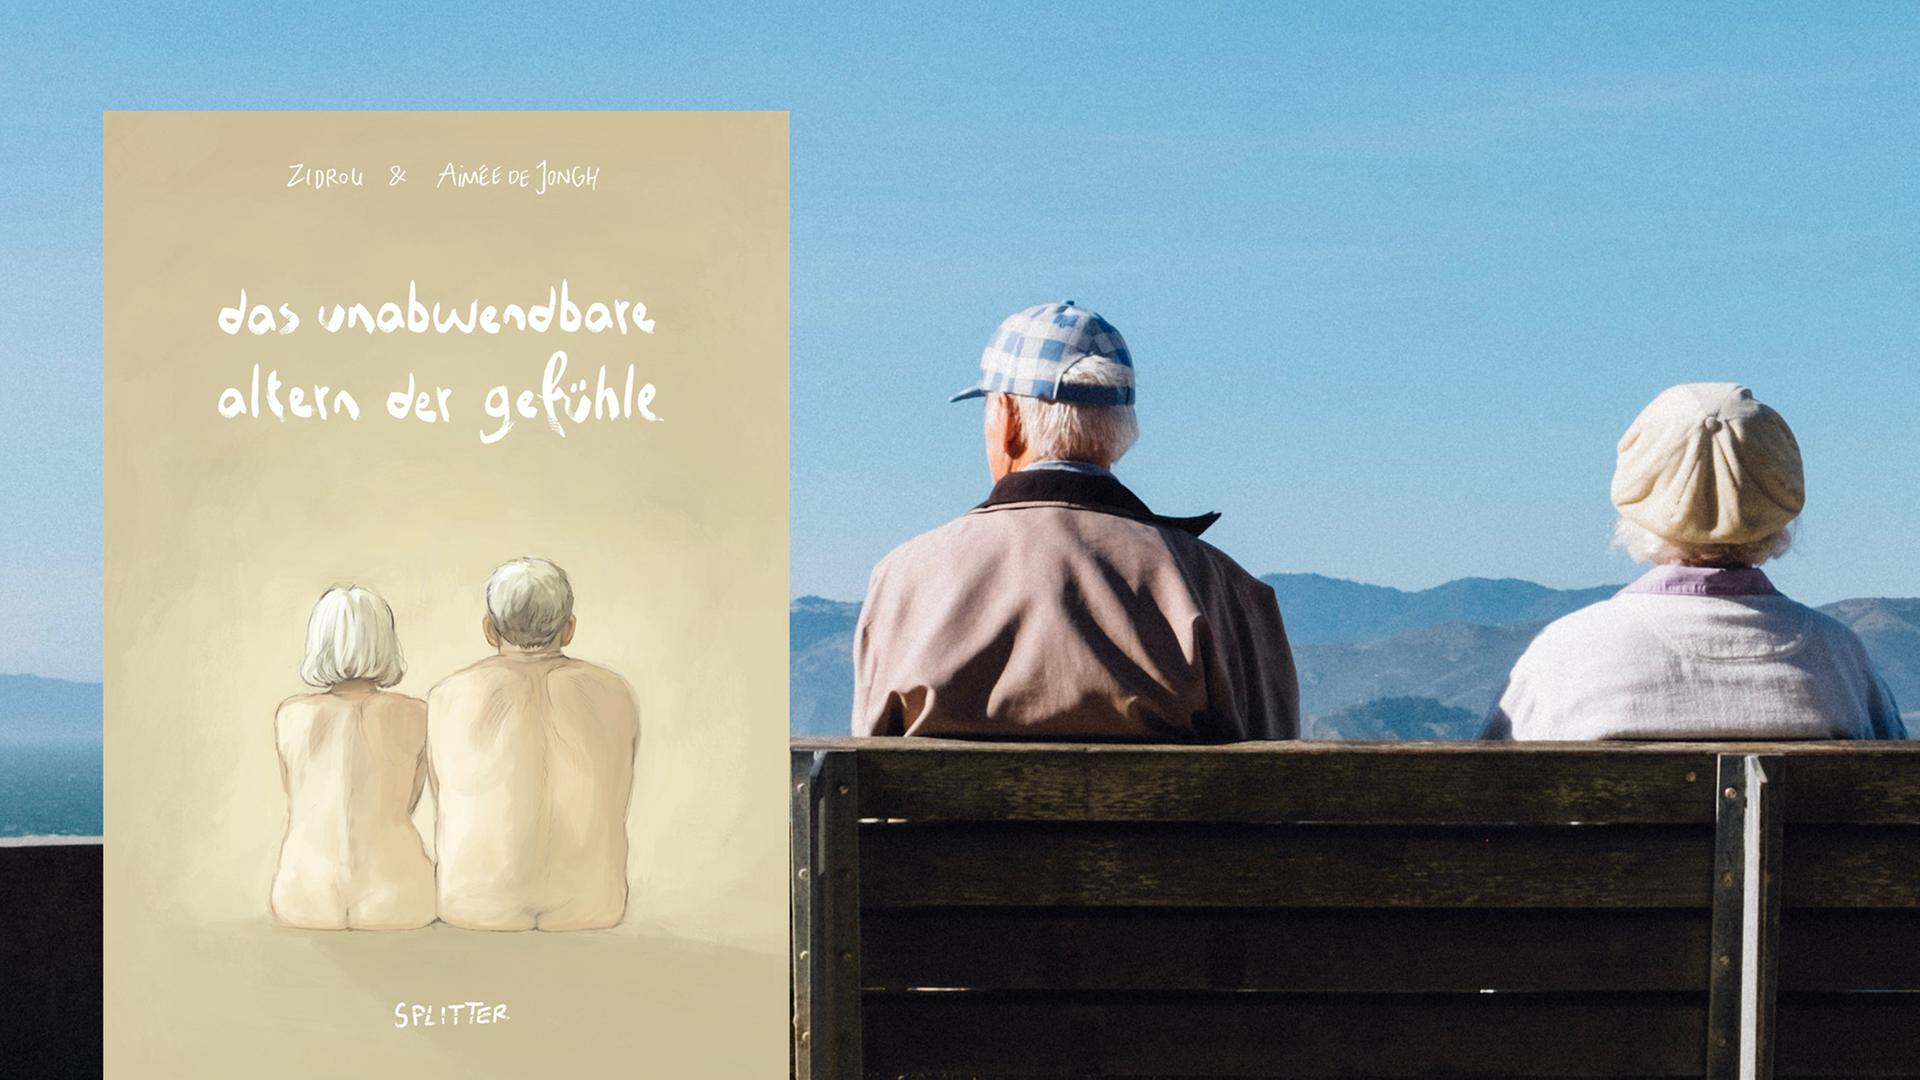 Buchcover: Das unabwendbare Altern der Gefühle vor Hintergrund von zwei älteren Menschen, die auf einer Bank sitzen und in die Ferne schauen.